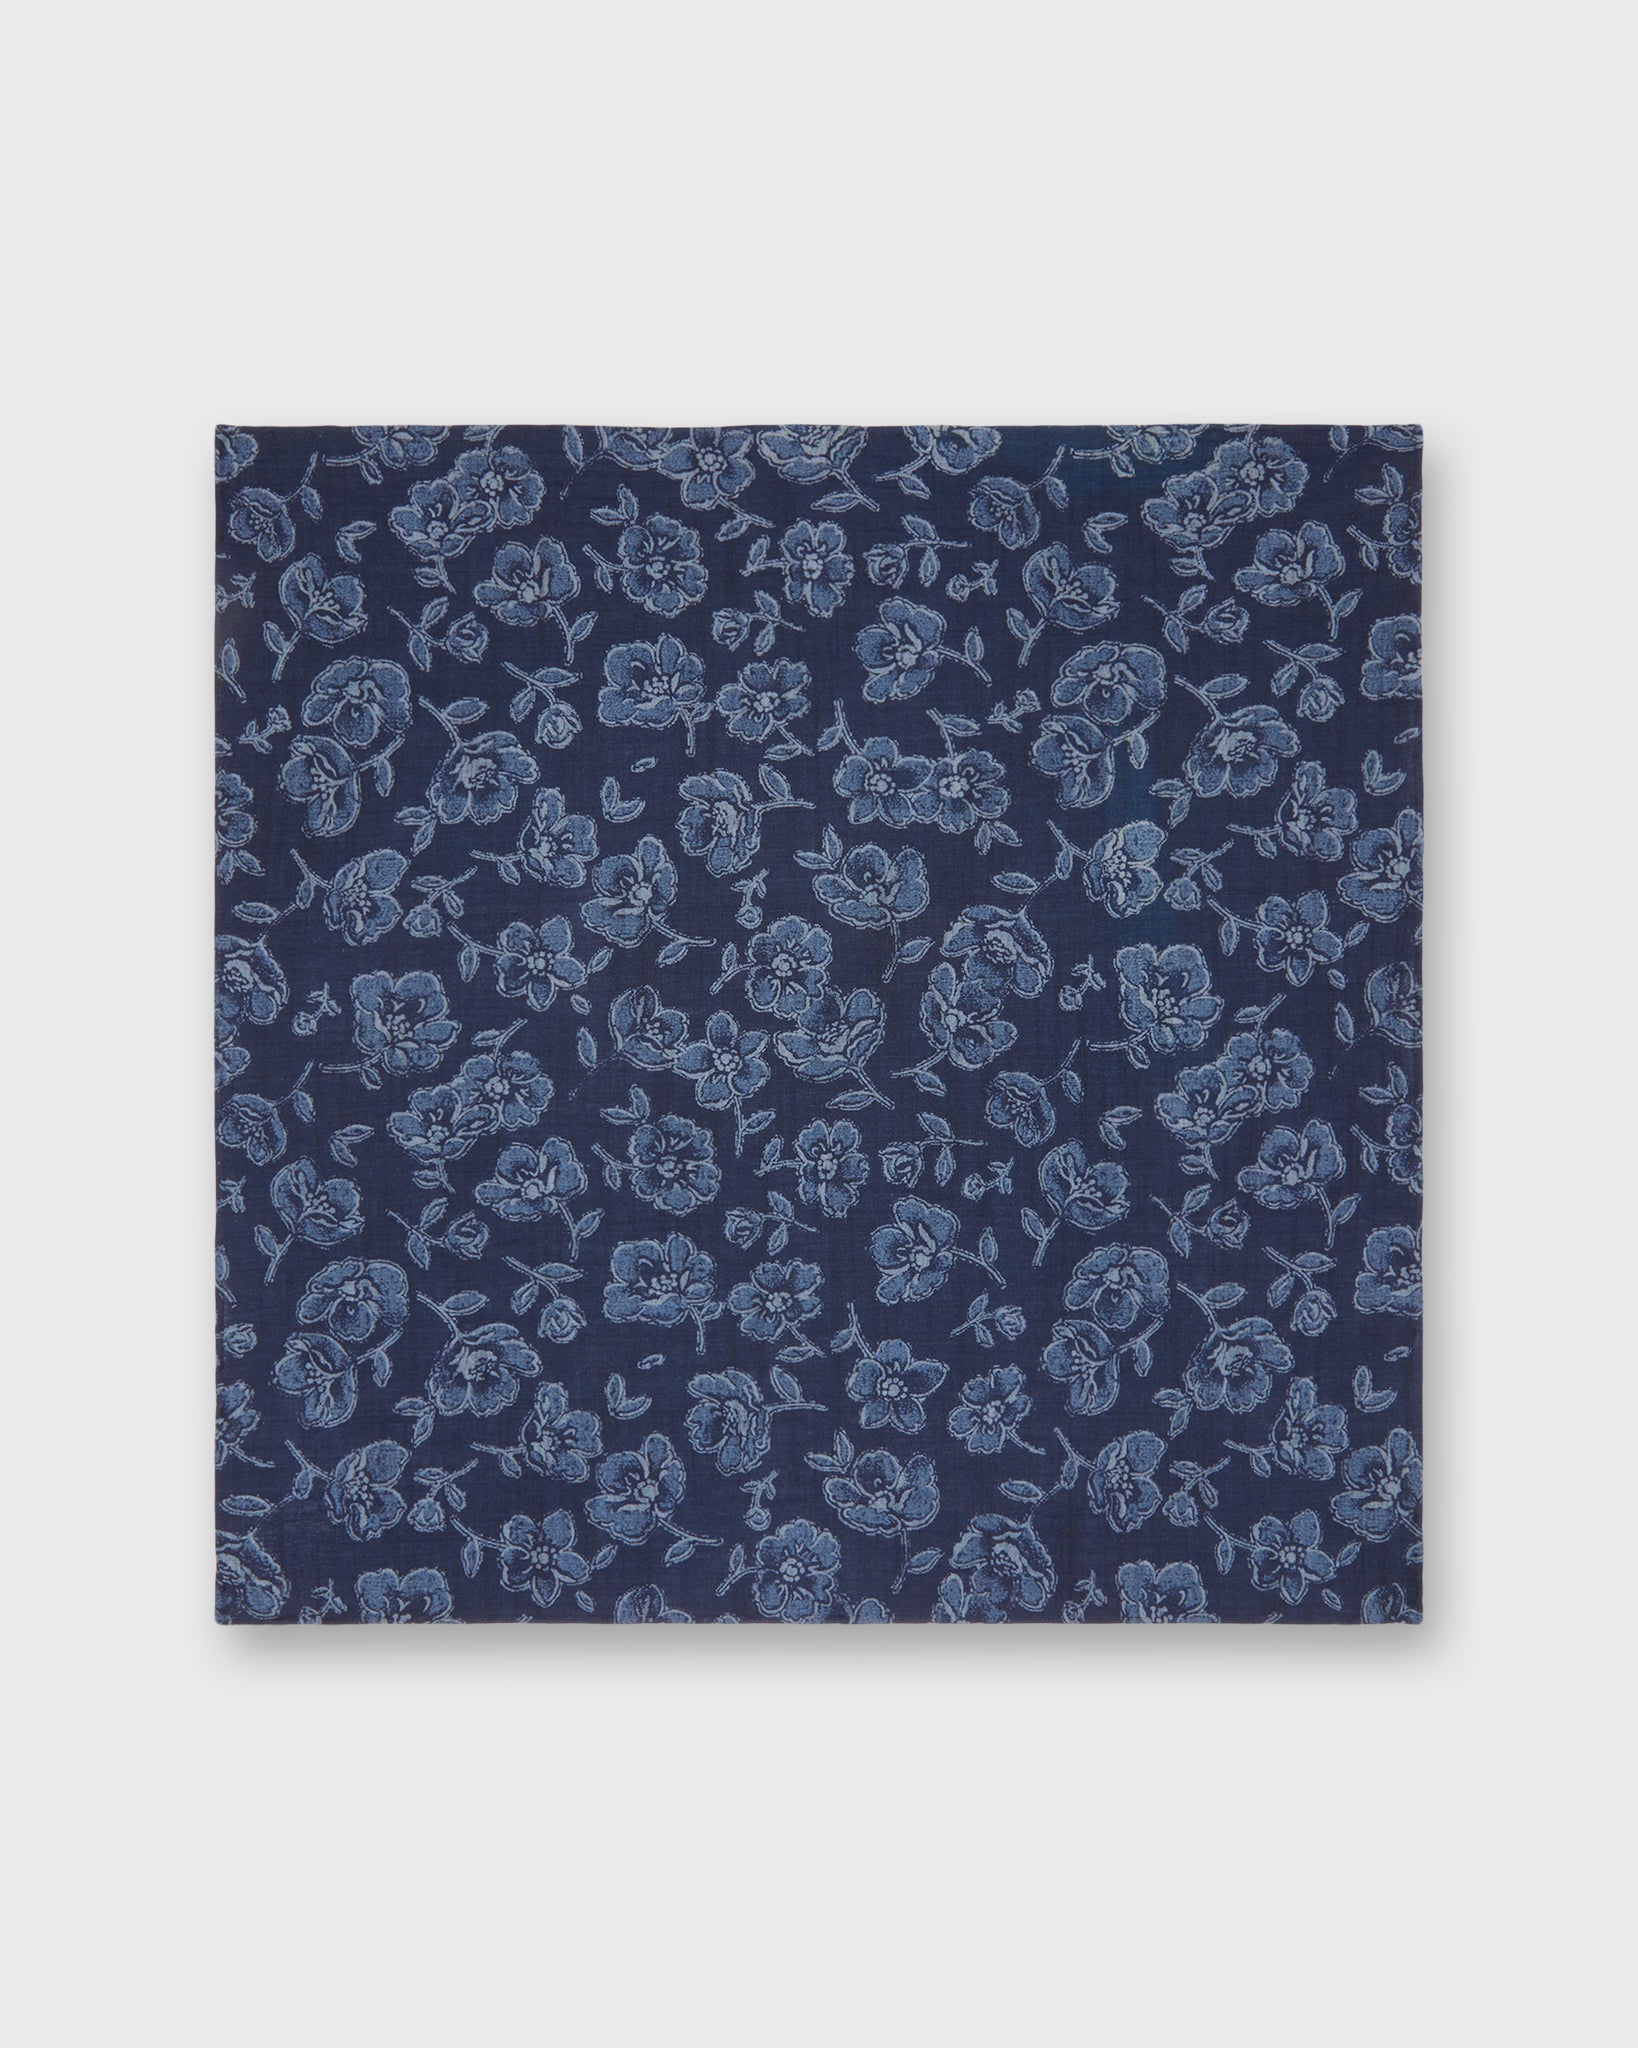 Cotton Print Pocket Square in Navy/Slate/Grey Floral Print Poplin